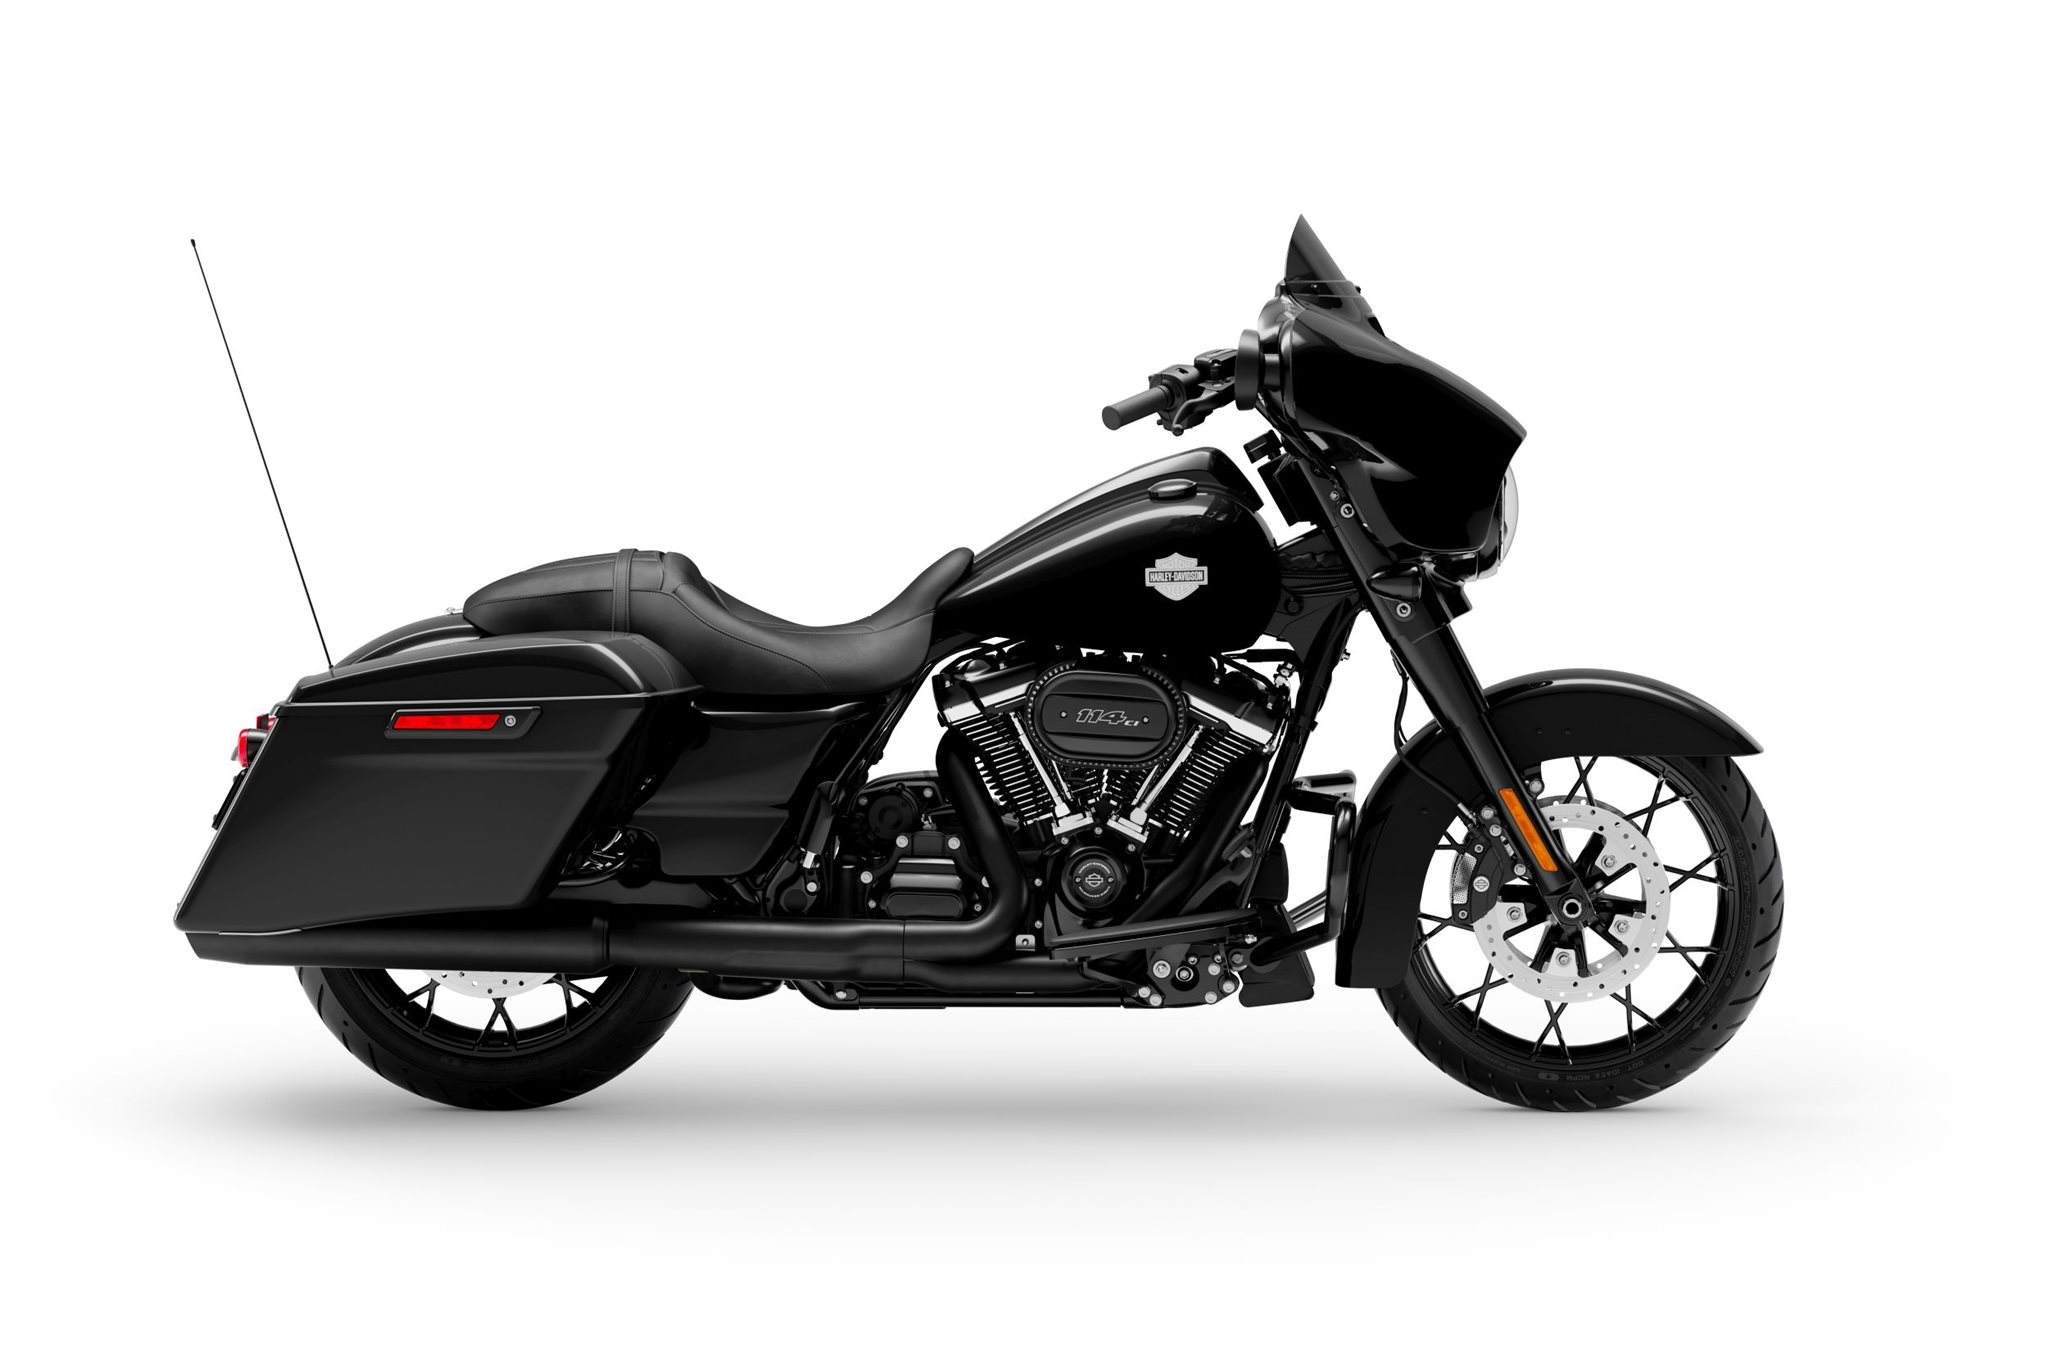 Motorrad Vergleich Harley Davidson Touring Street Glide Special Flhxs 2021 Vs Harley Davidson Touring Street Glide Special Flhxs 2019